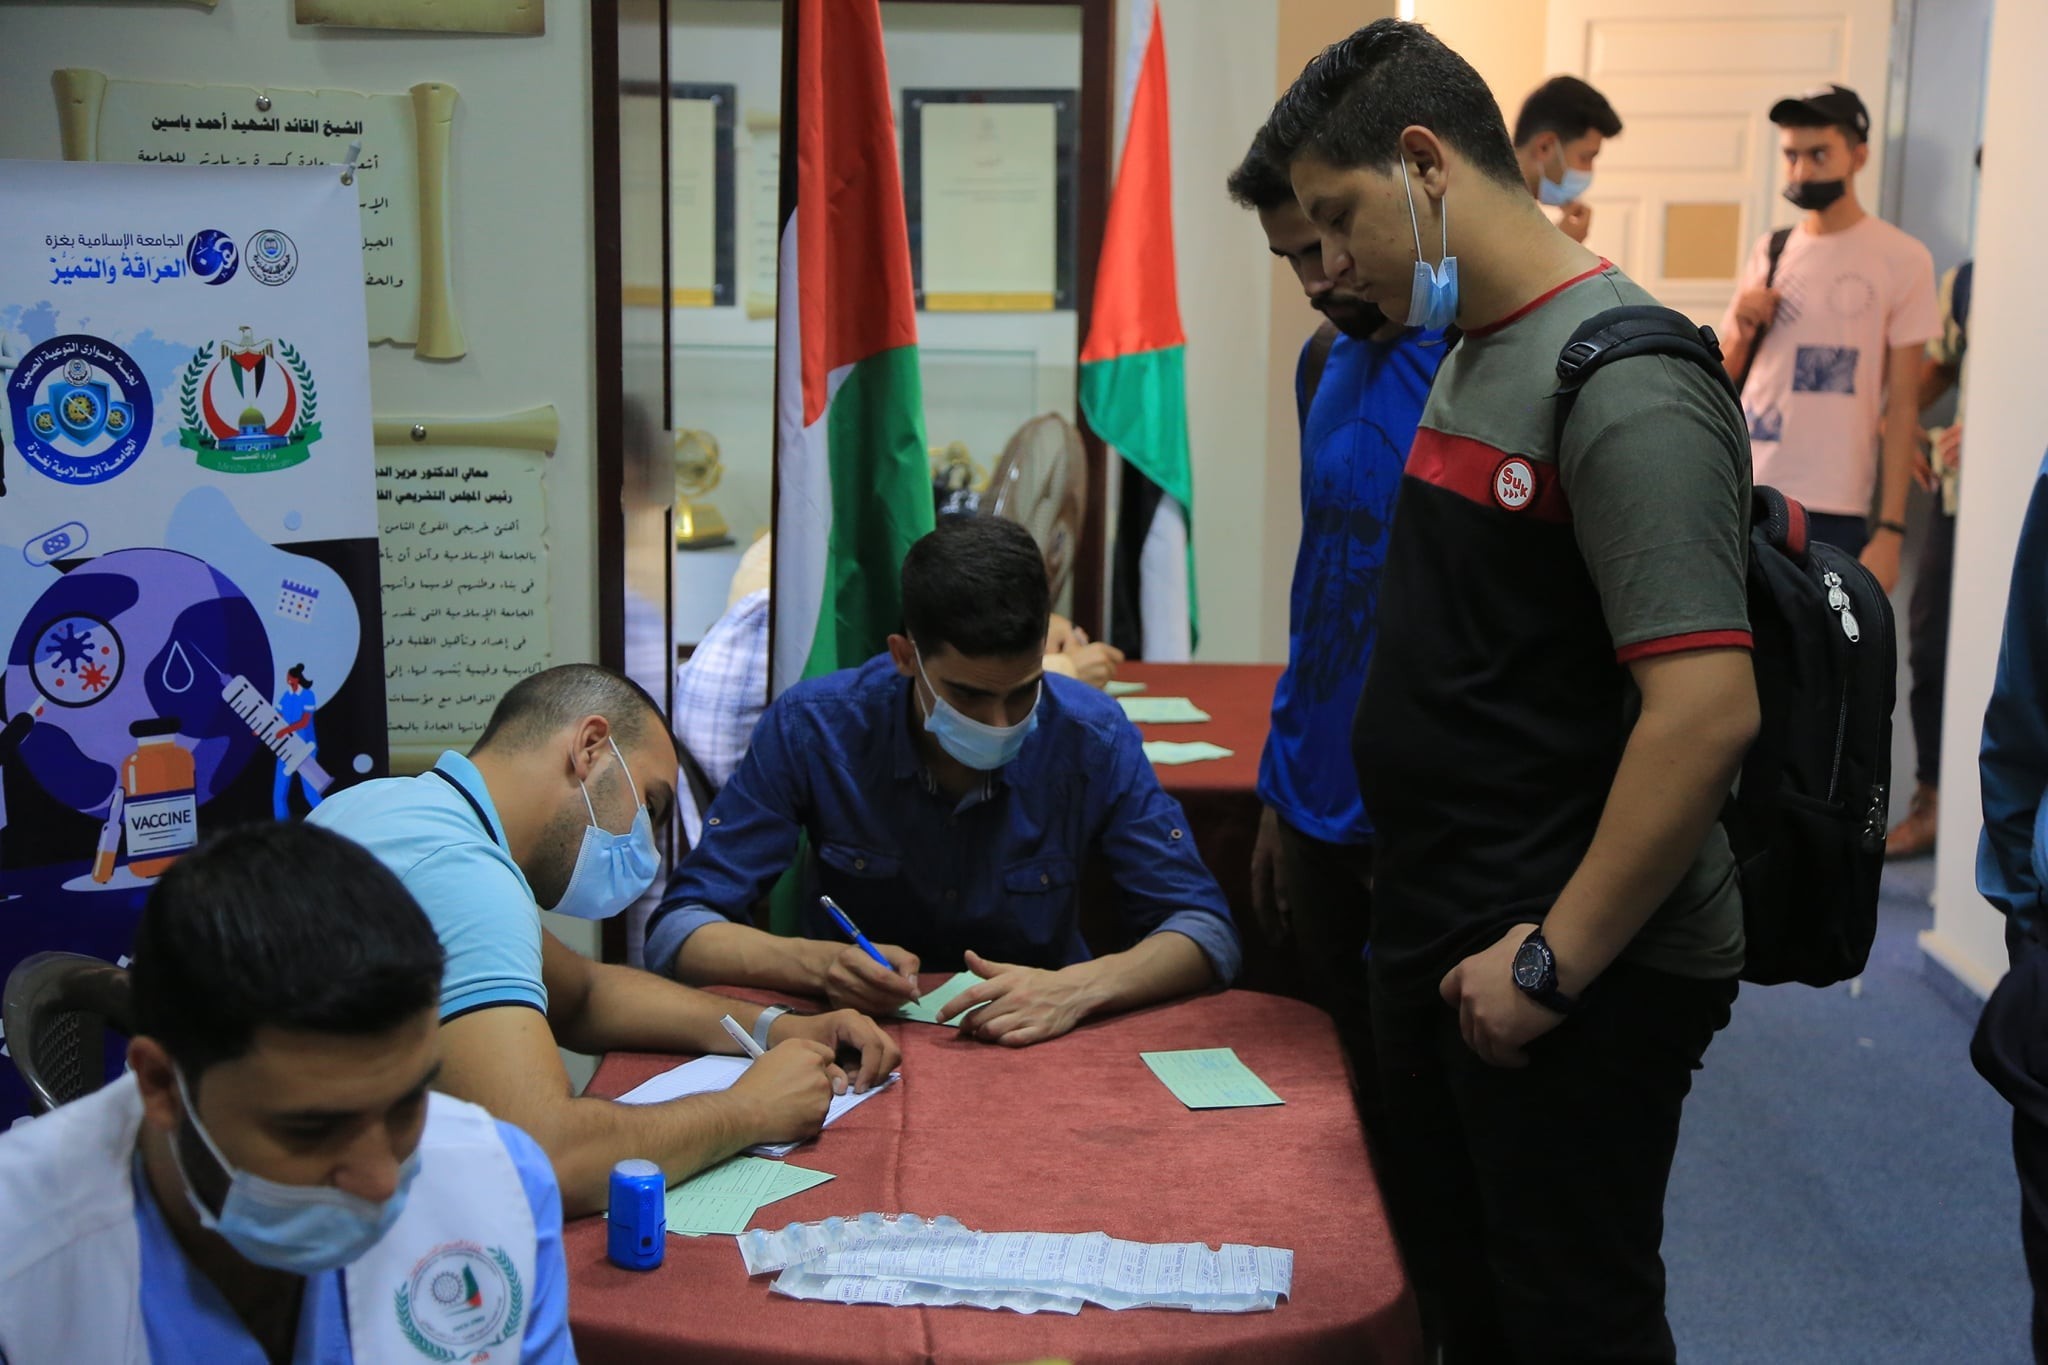 الجامعة الإسلامية بغزة تُطلق حملة لتطعيم طلبتها ضد "كورونا"